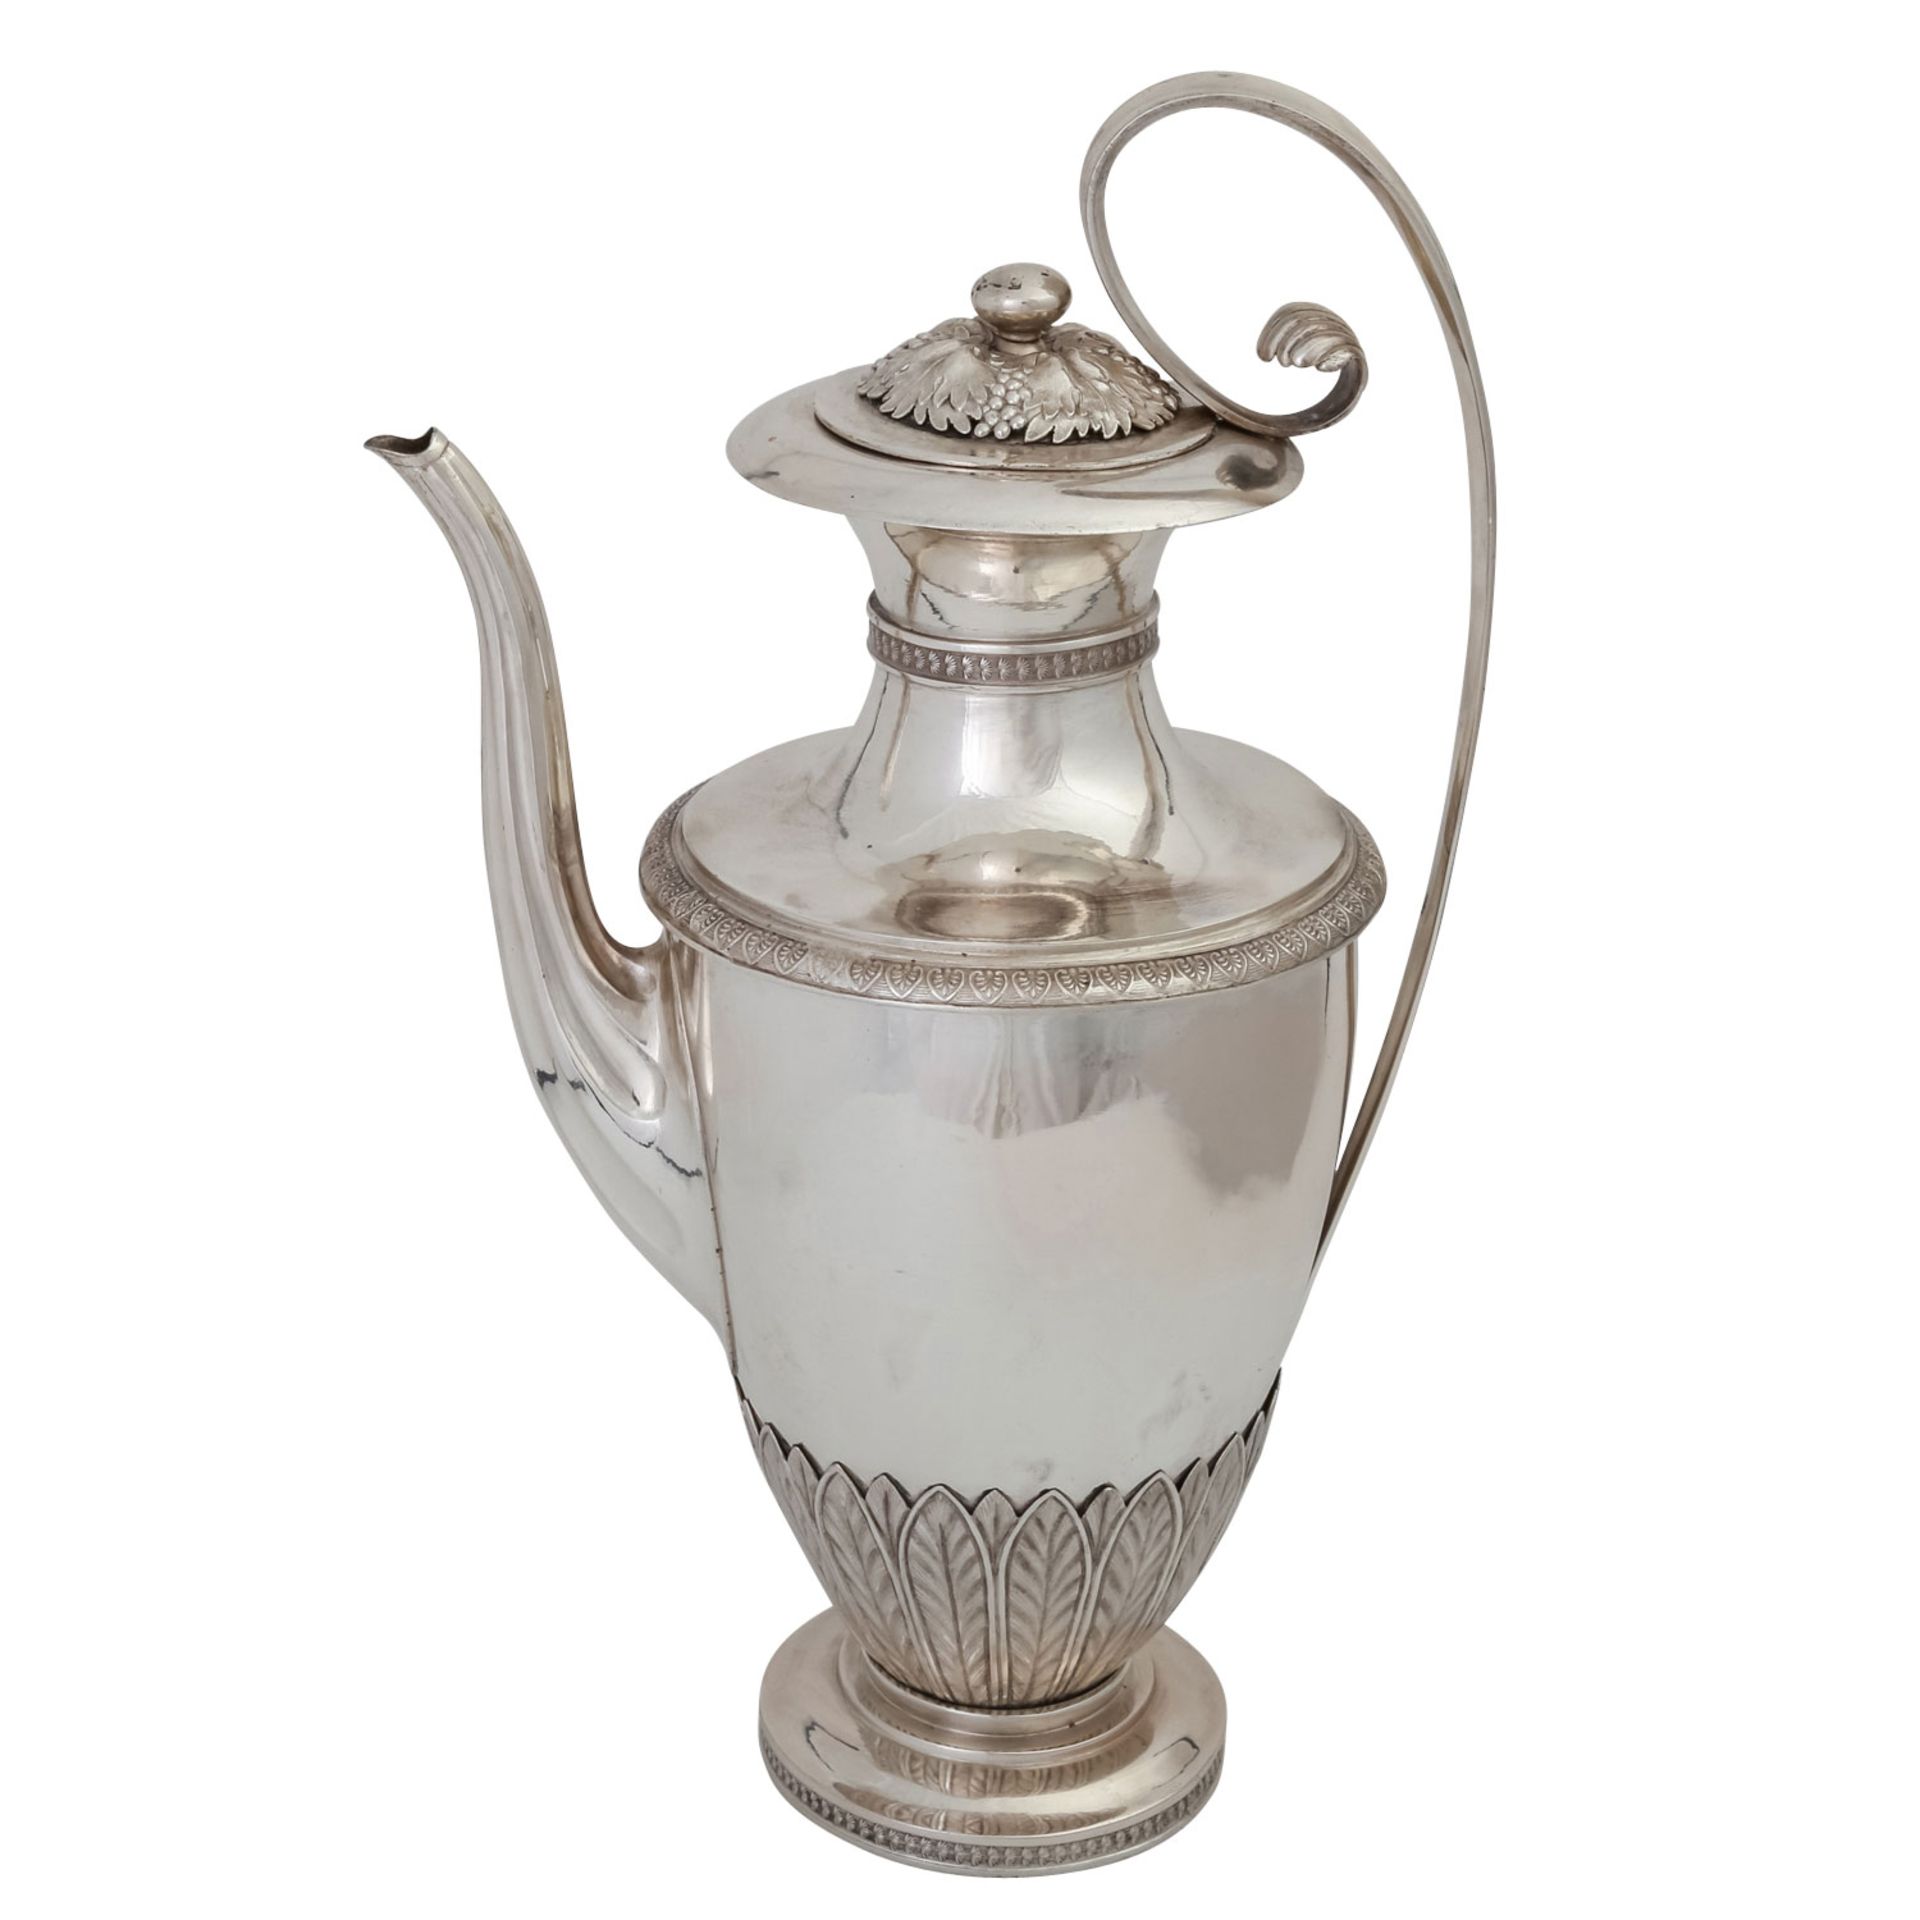 STUTTGART Kaffeekanne und Mokkakanne, Silber, um 1800.Ovoider Korpus auf rundem, profiliertem Stand, - Bild 3 aus 5